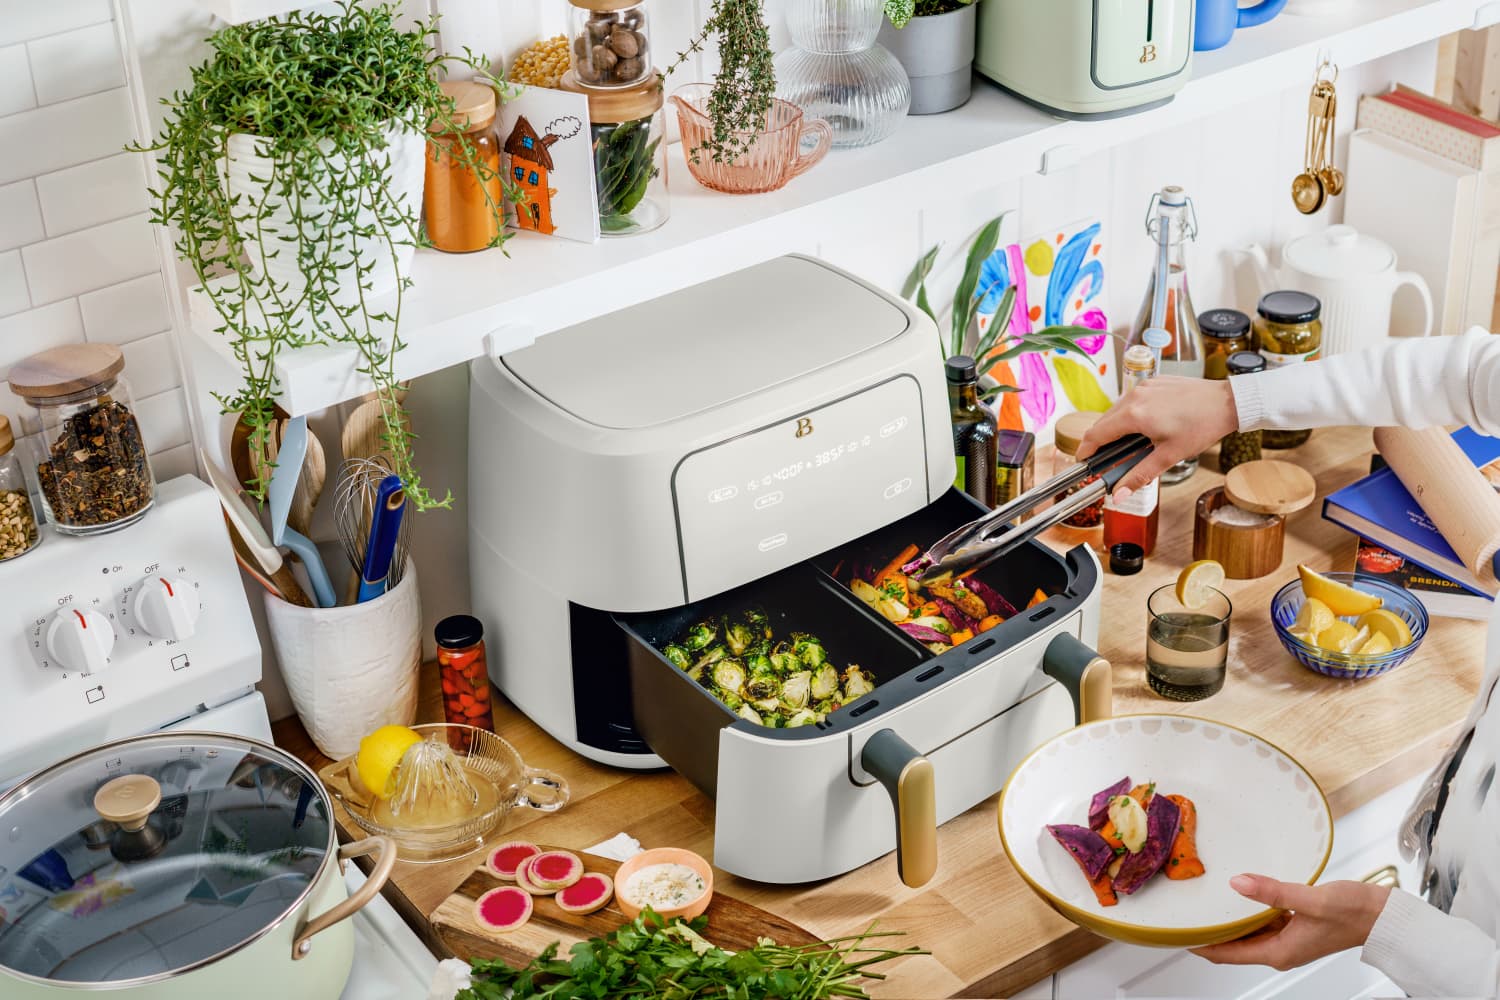 Beautiful Kitchen Appliances by Drew Barrymore - Walmart Finds  White  kitchen appliances, Beautiful kitchens, Kitchen appliances